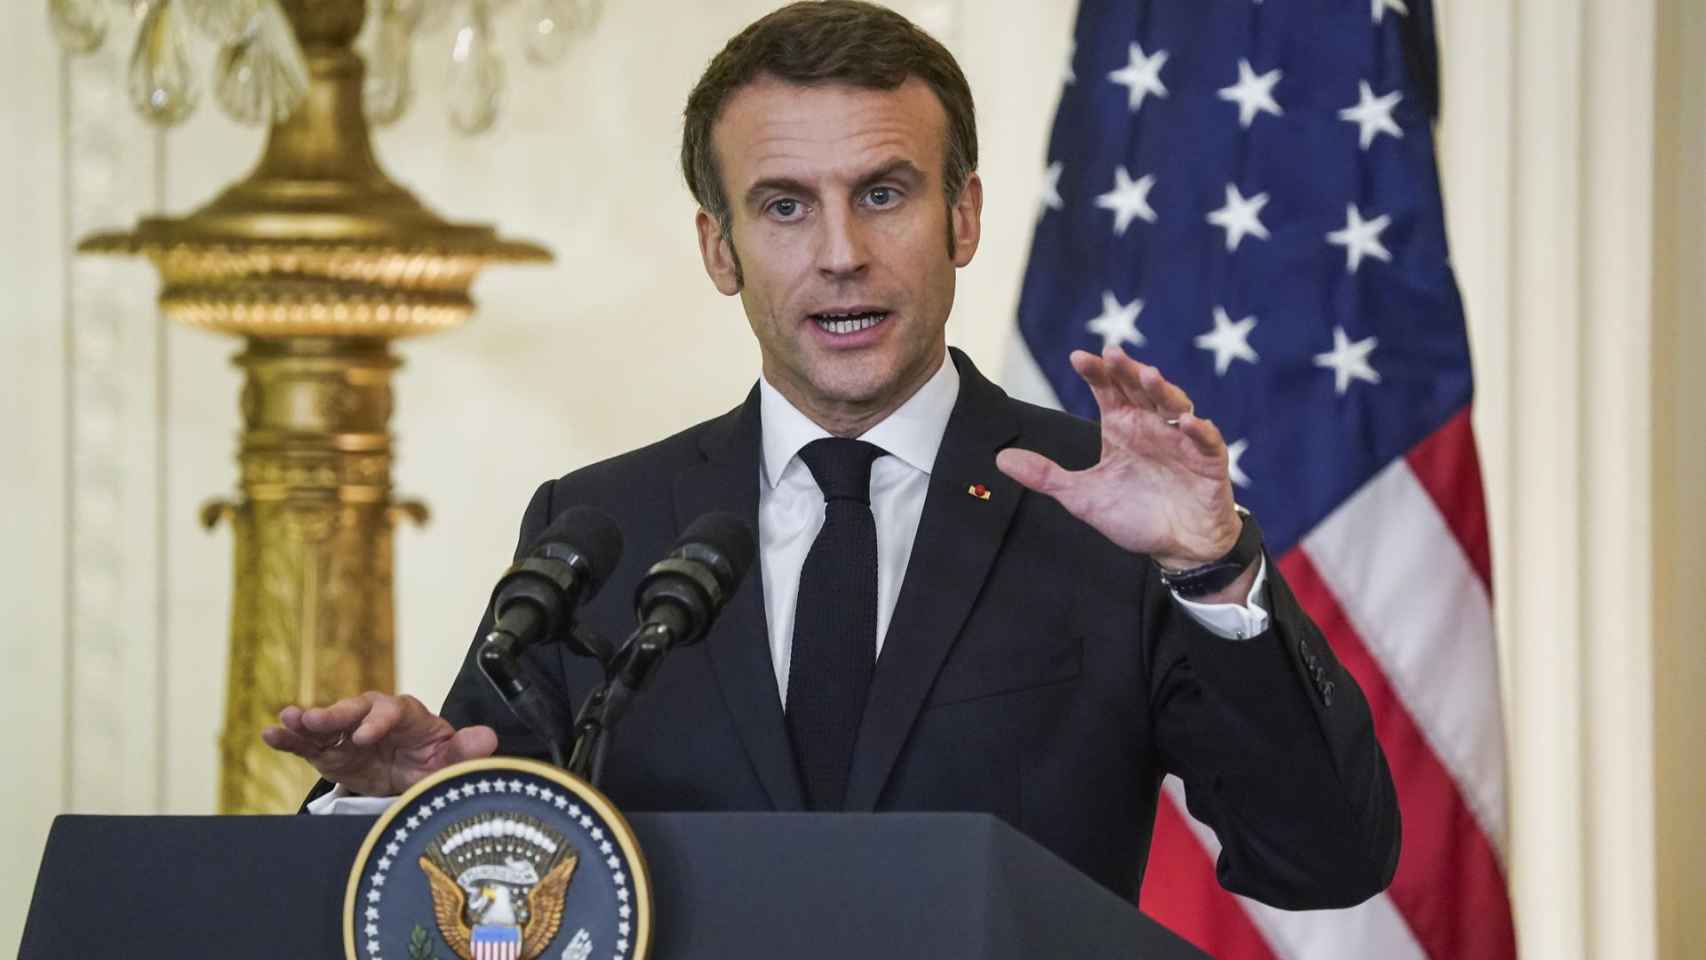 El presidente francés, Emmanuel Macron, el pasado jueves durante una rueda de prensa concedida con Joe Biden, presidente de Estados Unidos, en su visita al país.